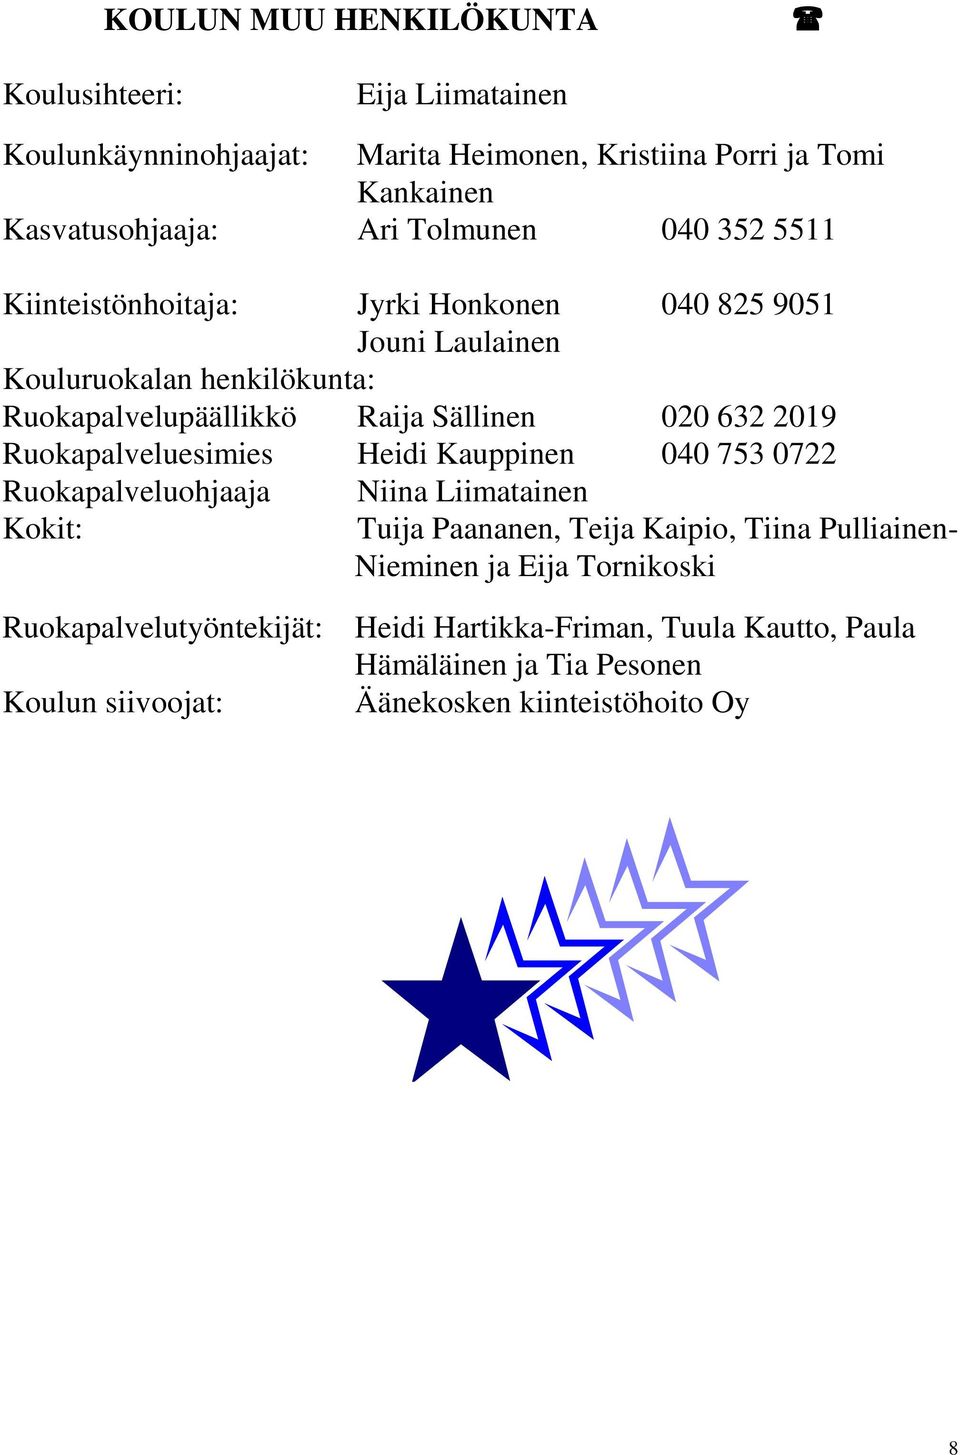 632 2019 Ruokapalveluesimies Heidi Kauppinen 040 753 0722 Ruokapalveluohjaaja Kokit: Niina Liimatainen Tuija Paananen, Teija Kaipio, Tiina Pulliainen-